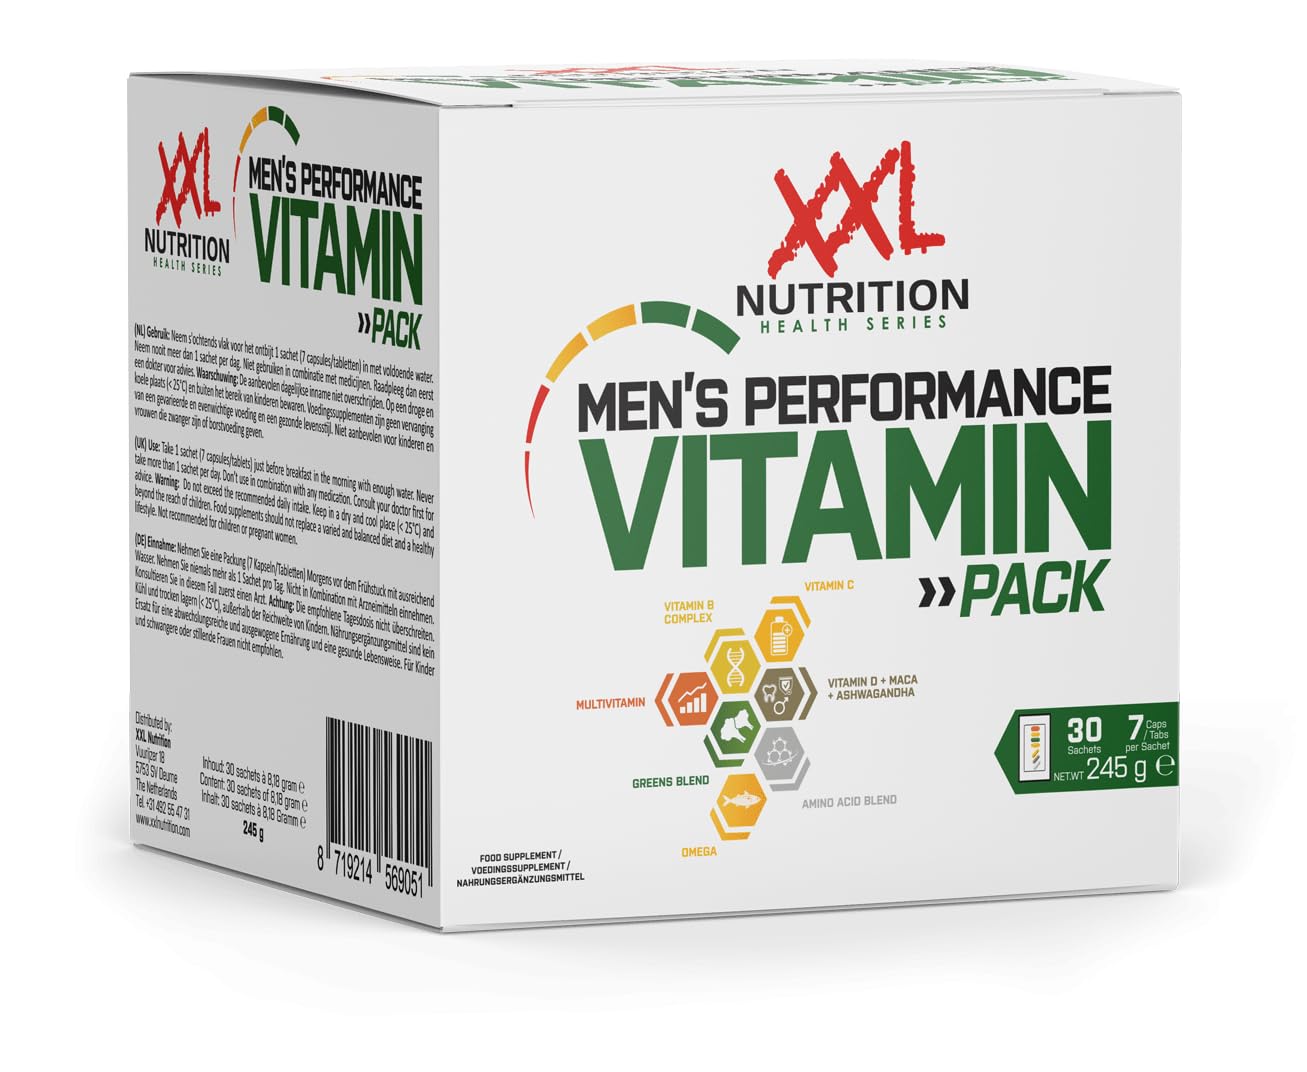 XXL Nutrition - Men's Performance Vitamin Pack - Multivitamin, mehr als 30 aktive Inhaltsstoffem, für männliche Sportler - 30 Sachets